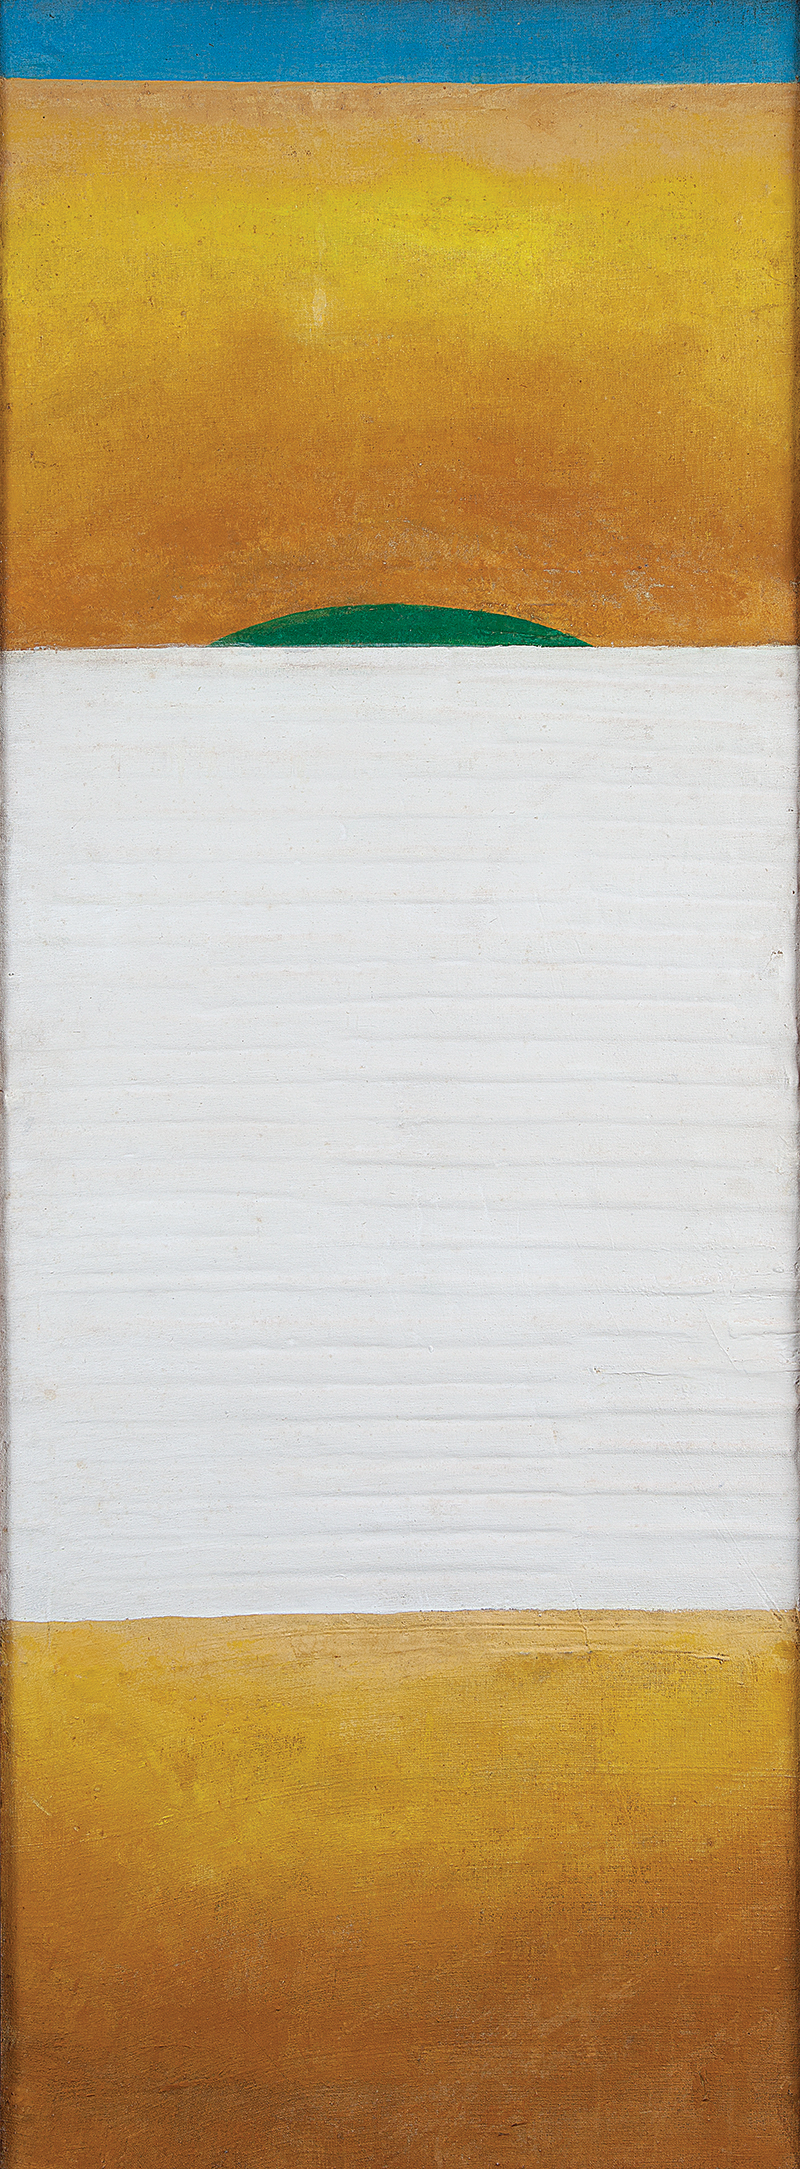 HEINZ KÜNH - `Sem título` - Óleo sobre tela colado sobre madeira com relevo. Ass.dat.1978 no verso. - 122 x 48 cm